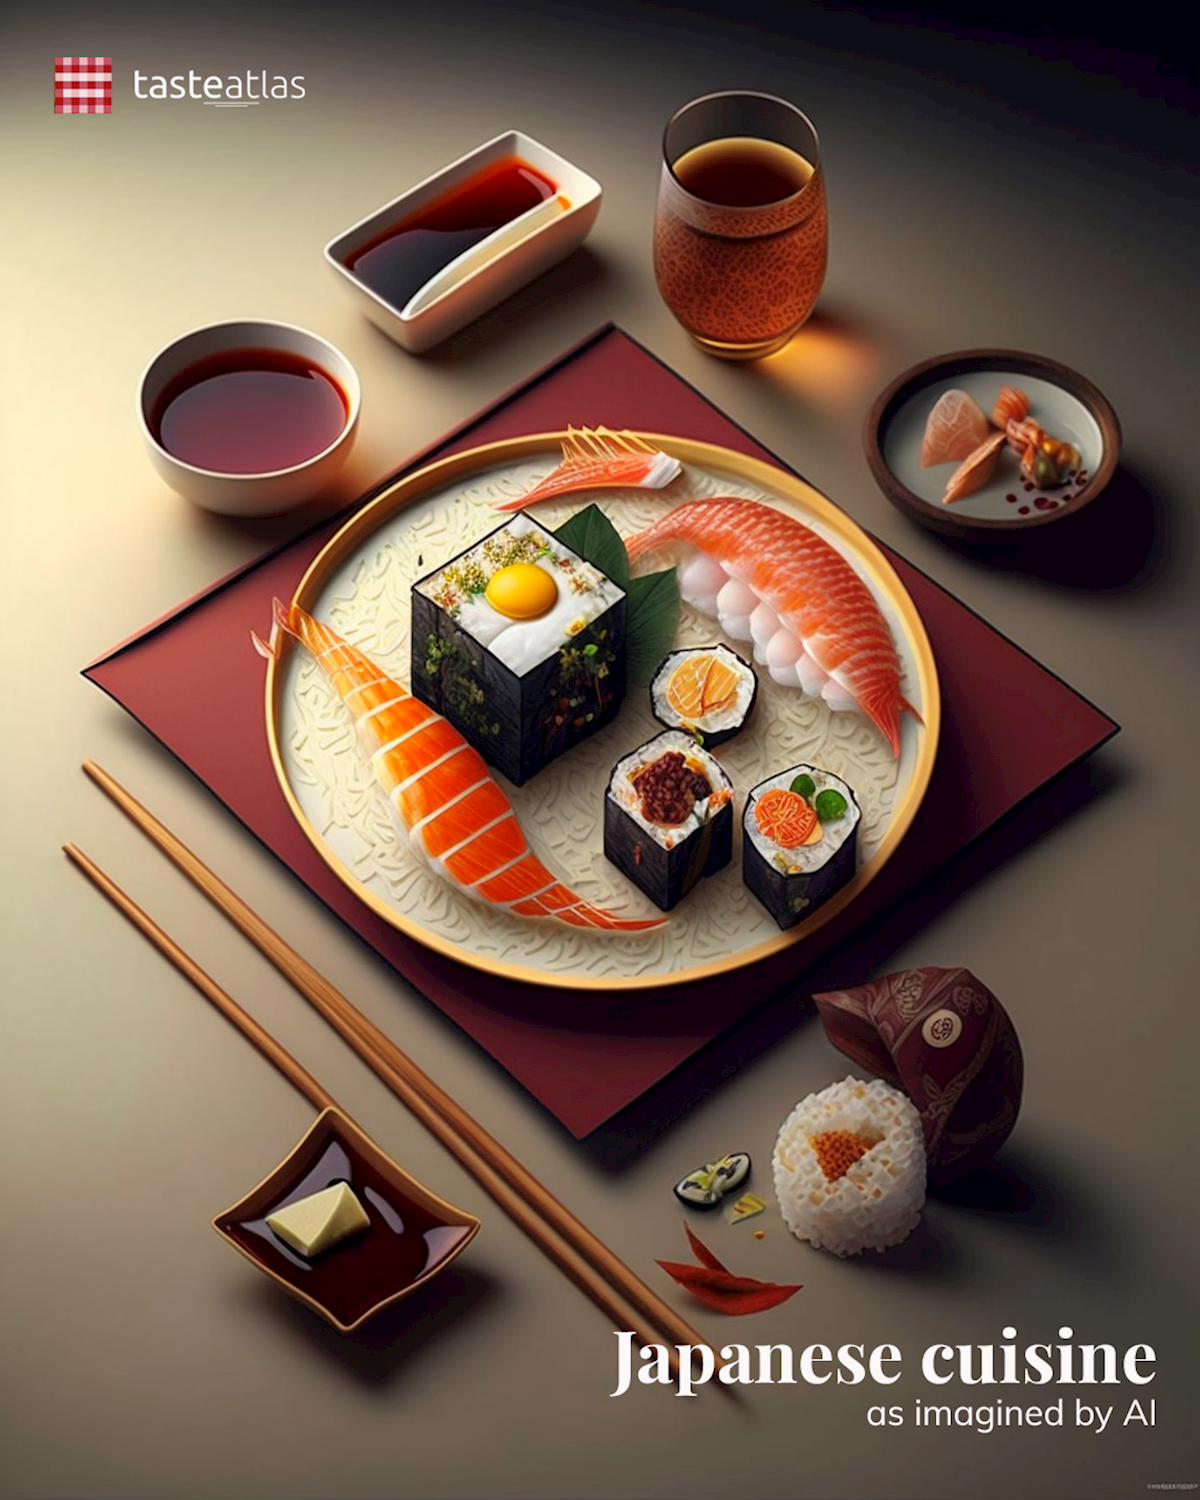 Prompt: Imagine Japanese cuisine